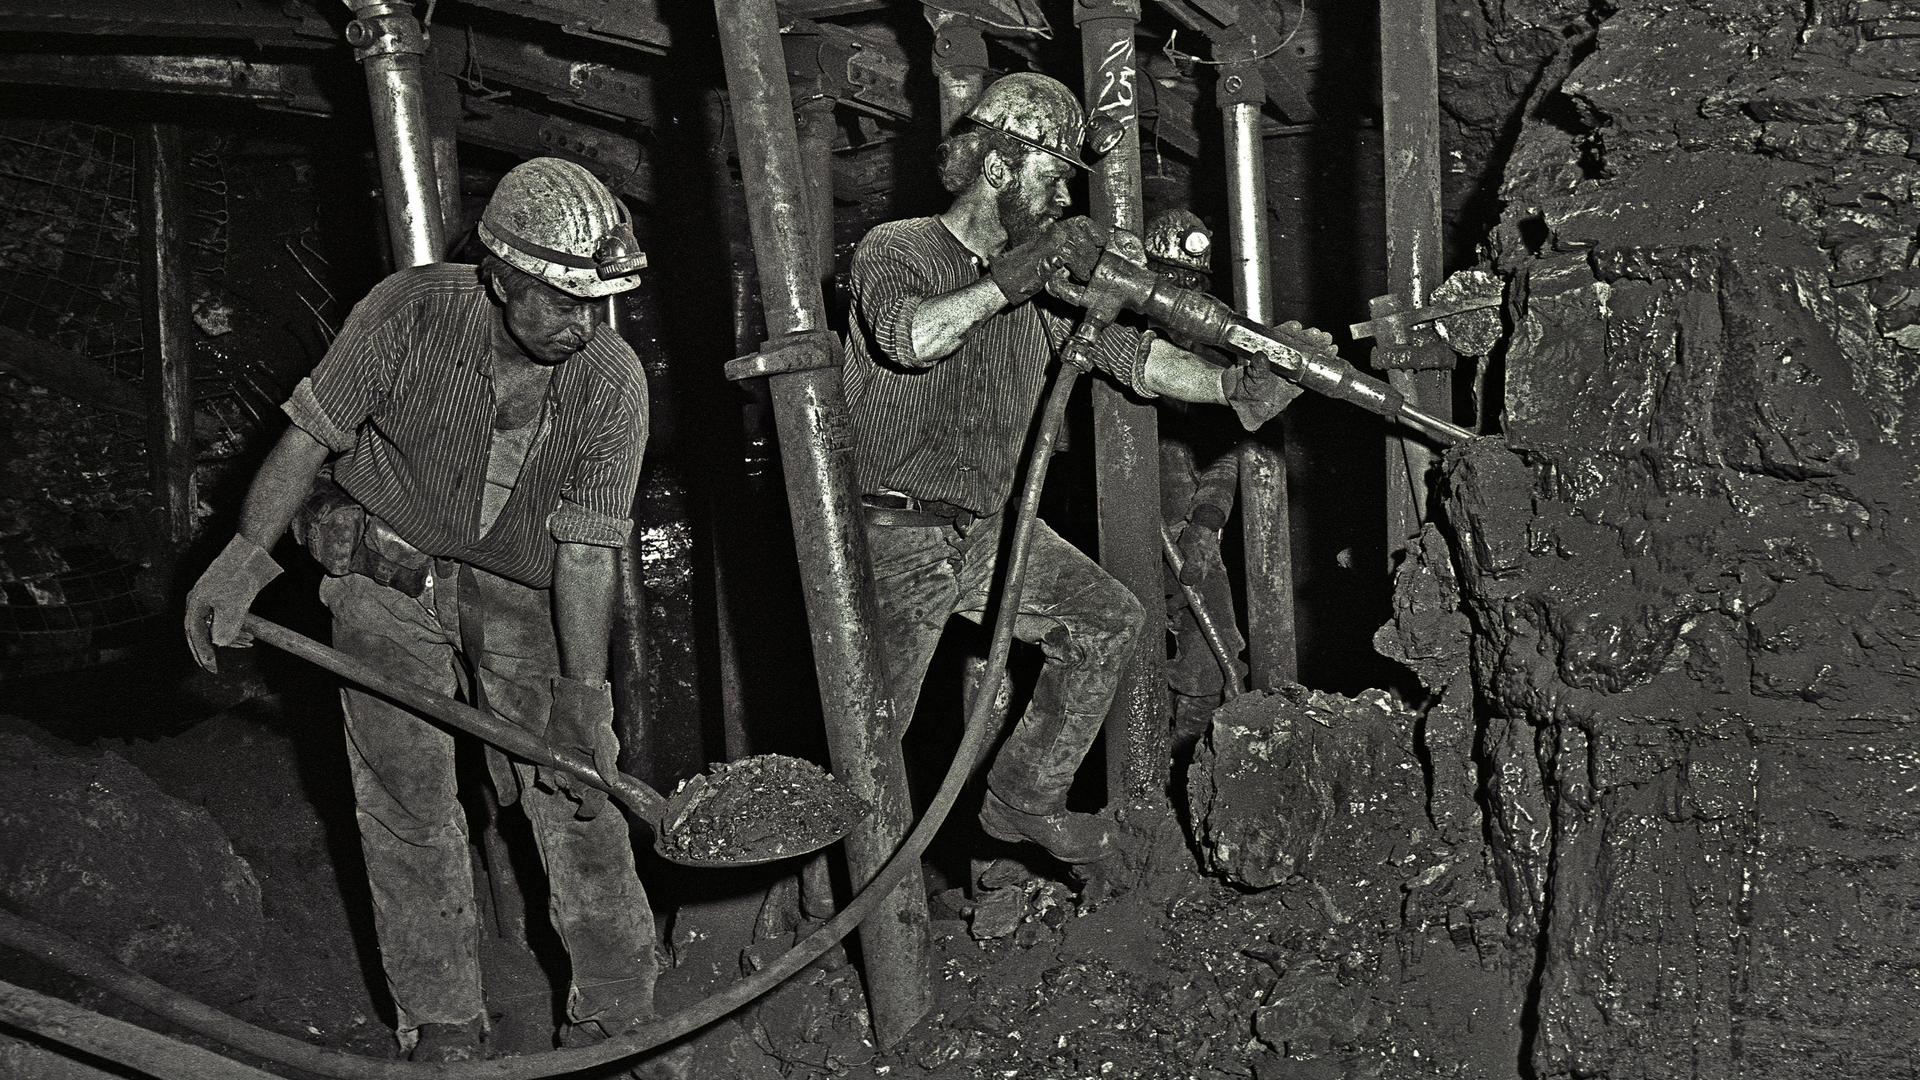 Bergleute bauen mit Presslufthammer und Schaufel auf der Zeche Ewald in Herten Kohle ab.